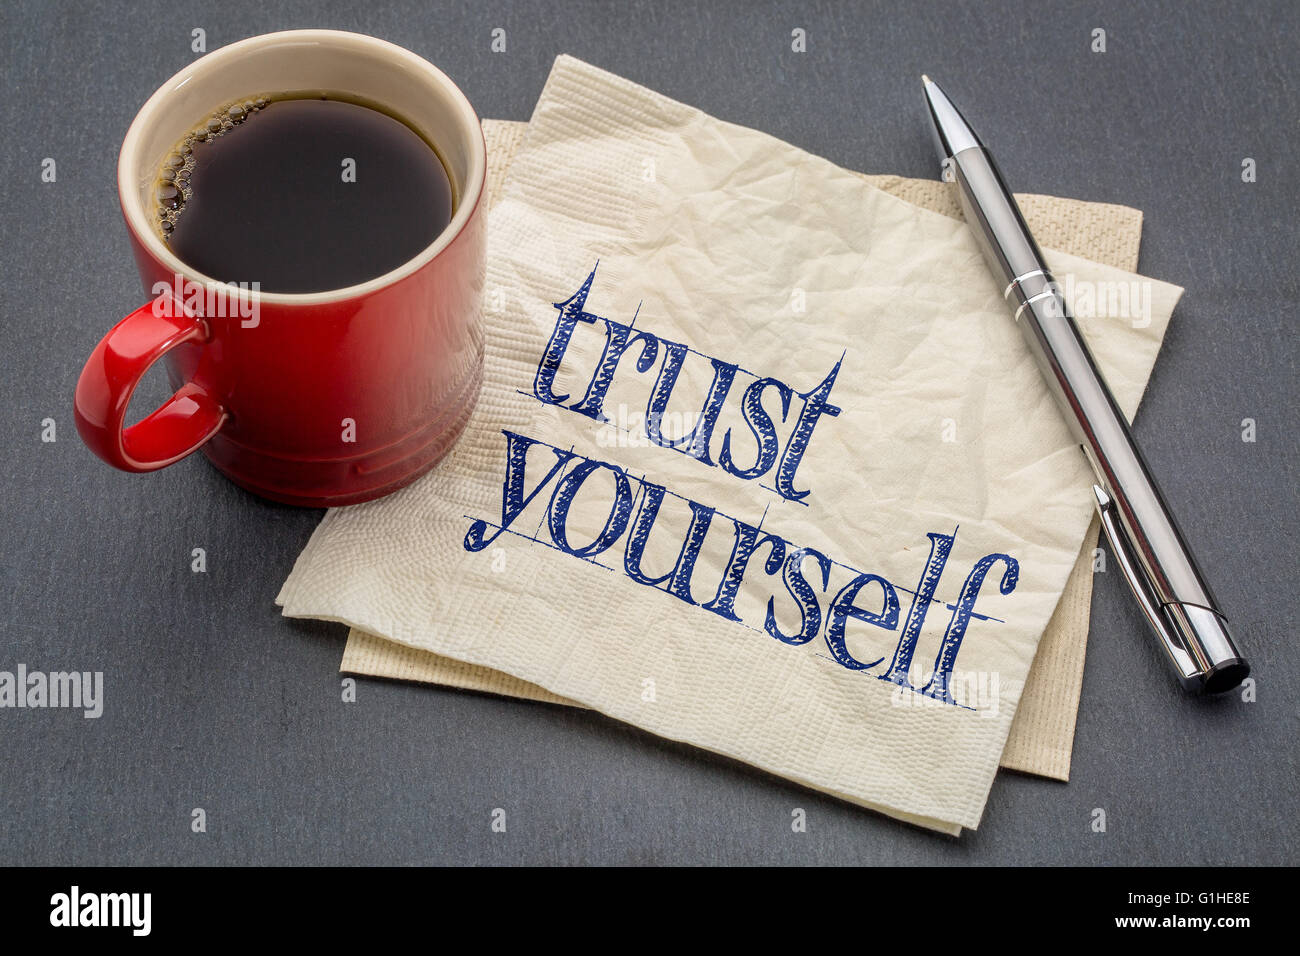 Vertraue dir selbst Beratung - Handschrift auf einer Serviette mit einer Tasse Kaffee Stockfoto